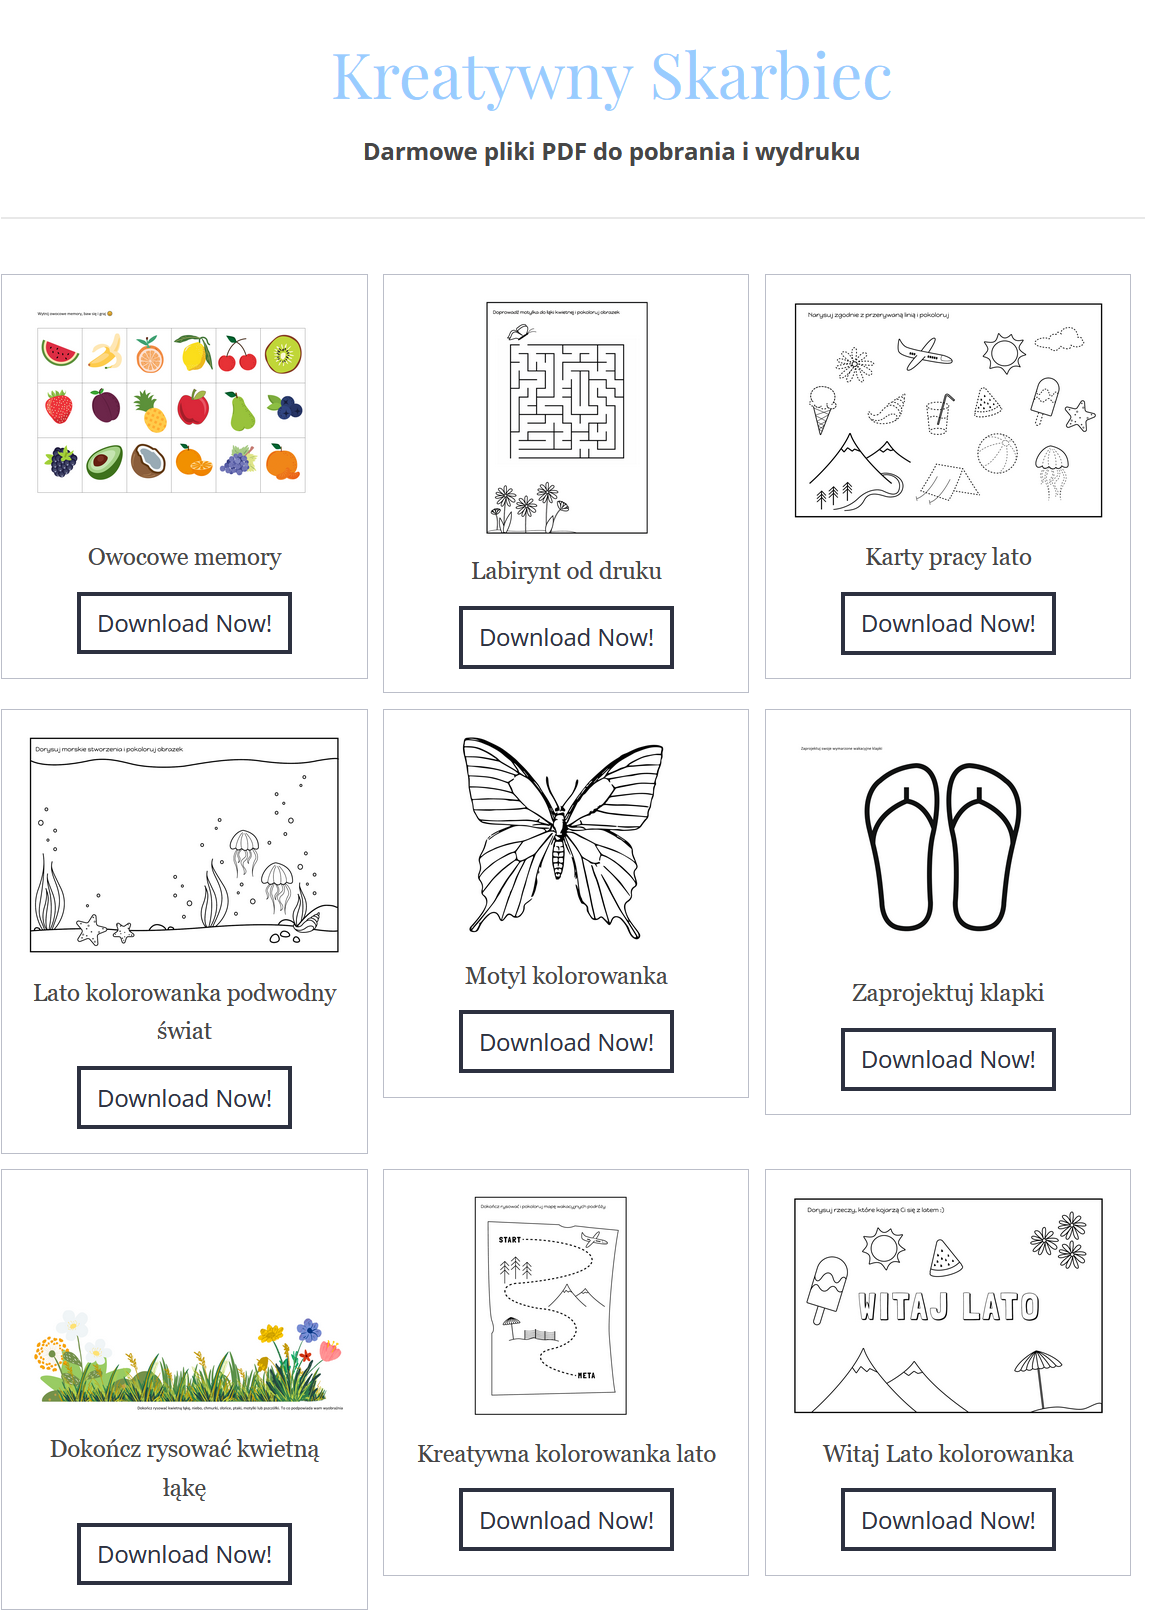 kreatywny skarbiec, moje dzieci kreatywnie pdf